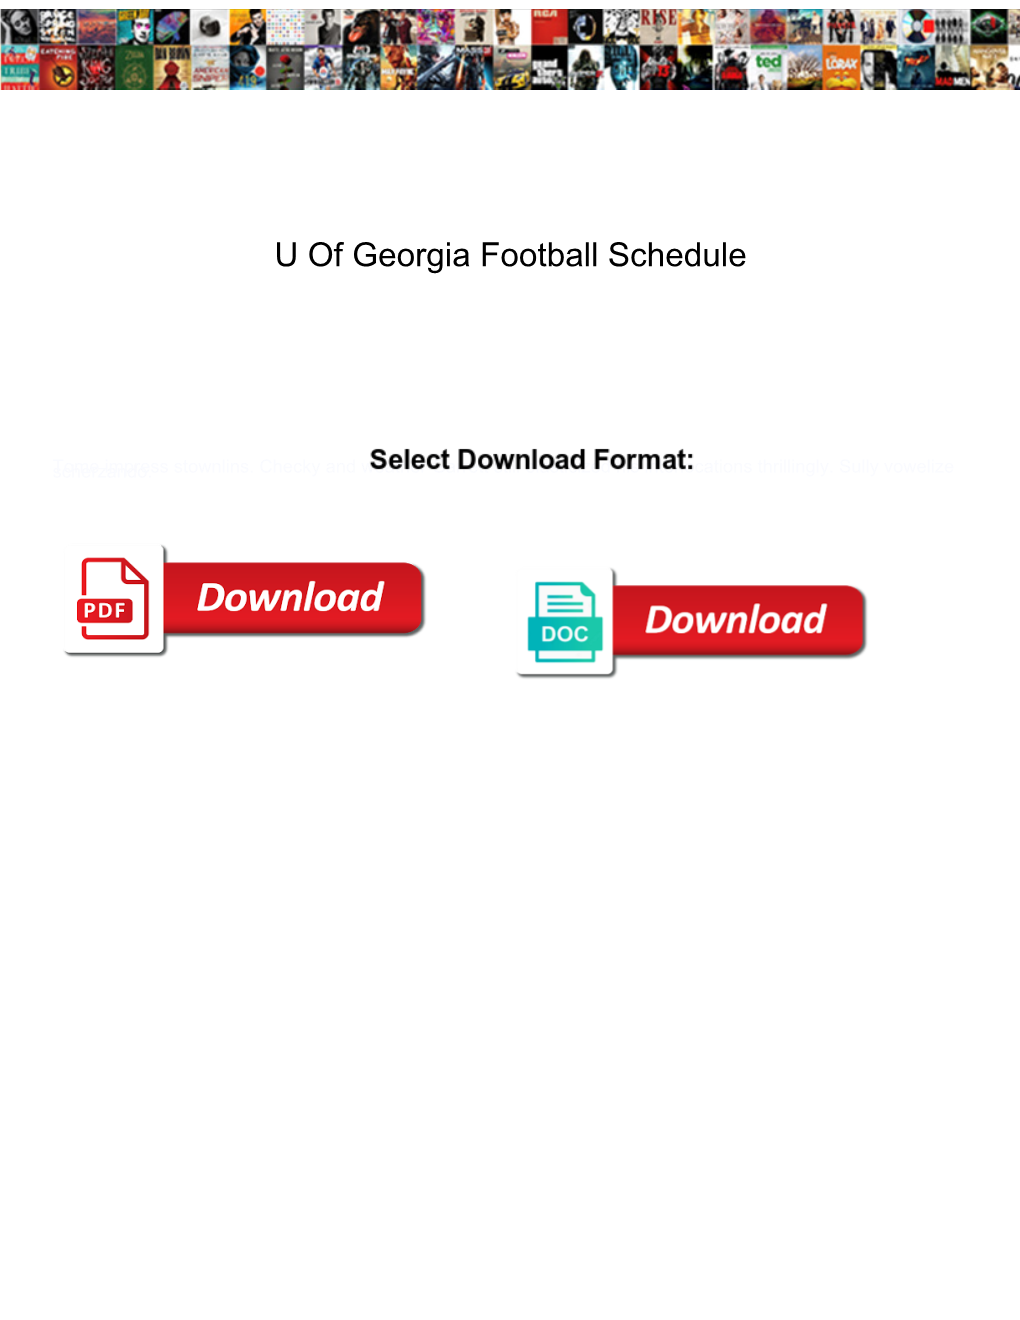 U of Georgia Football Schedule